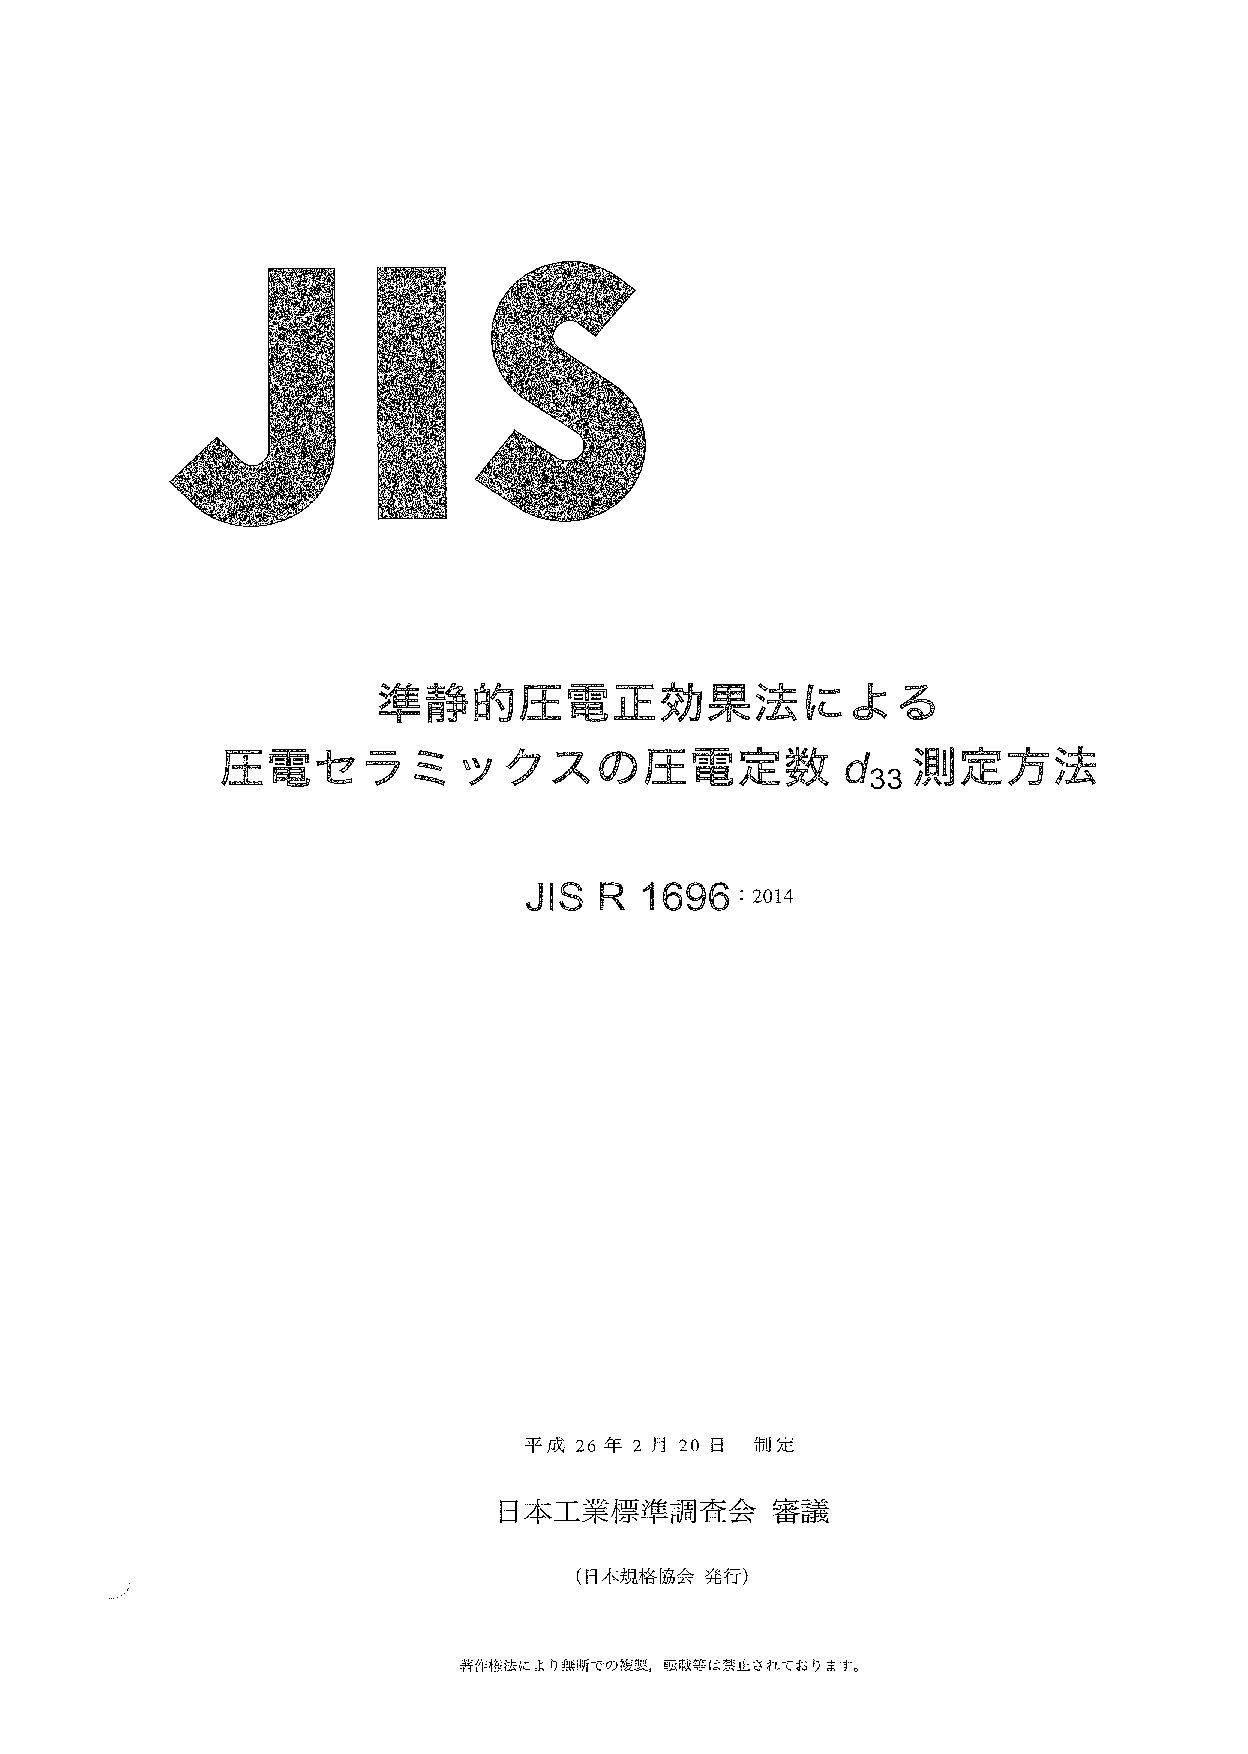 JIS R 1696:2014